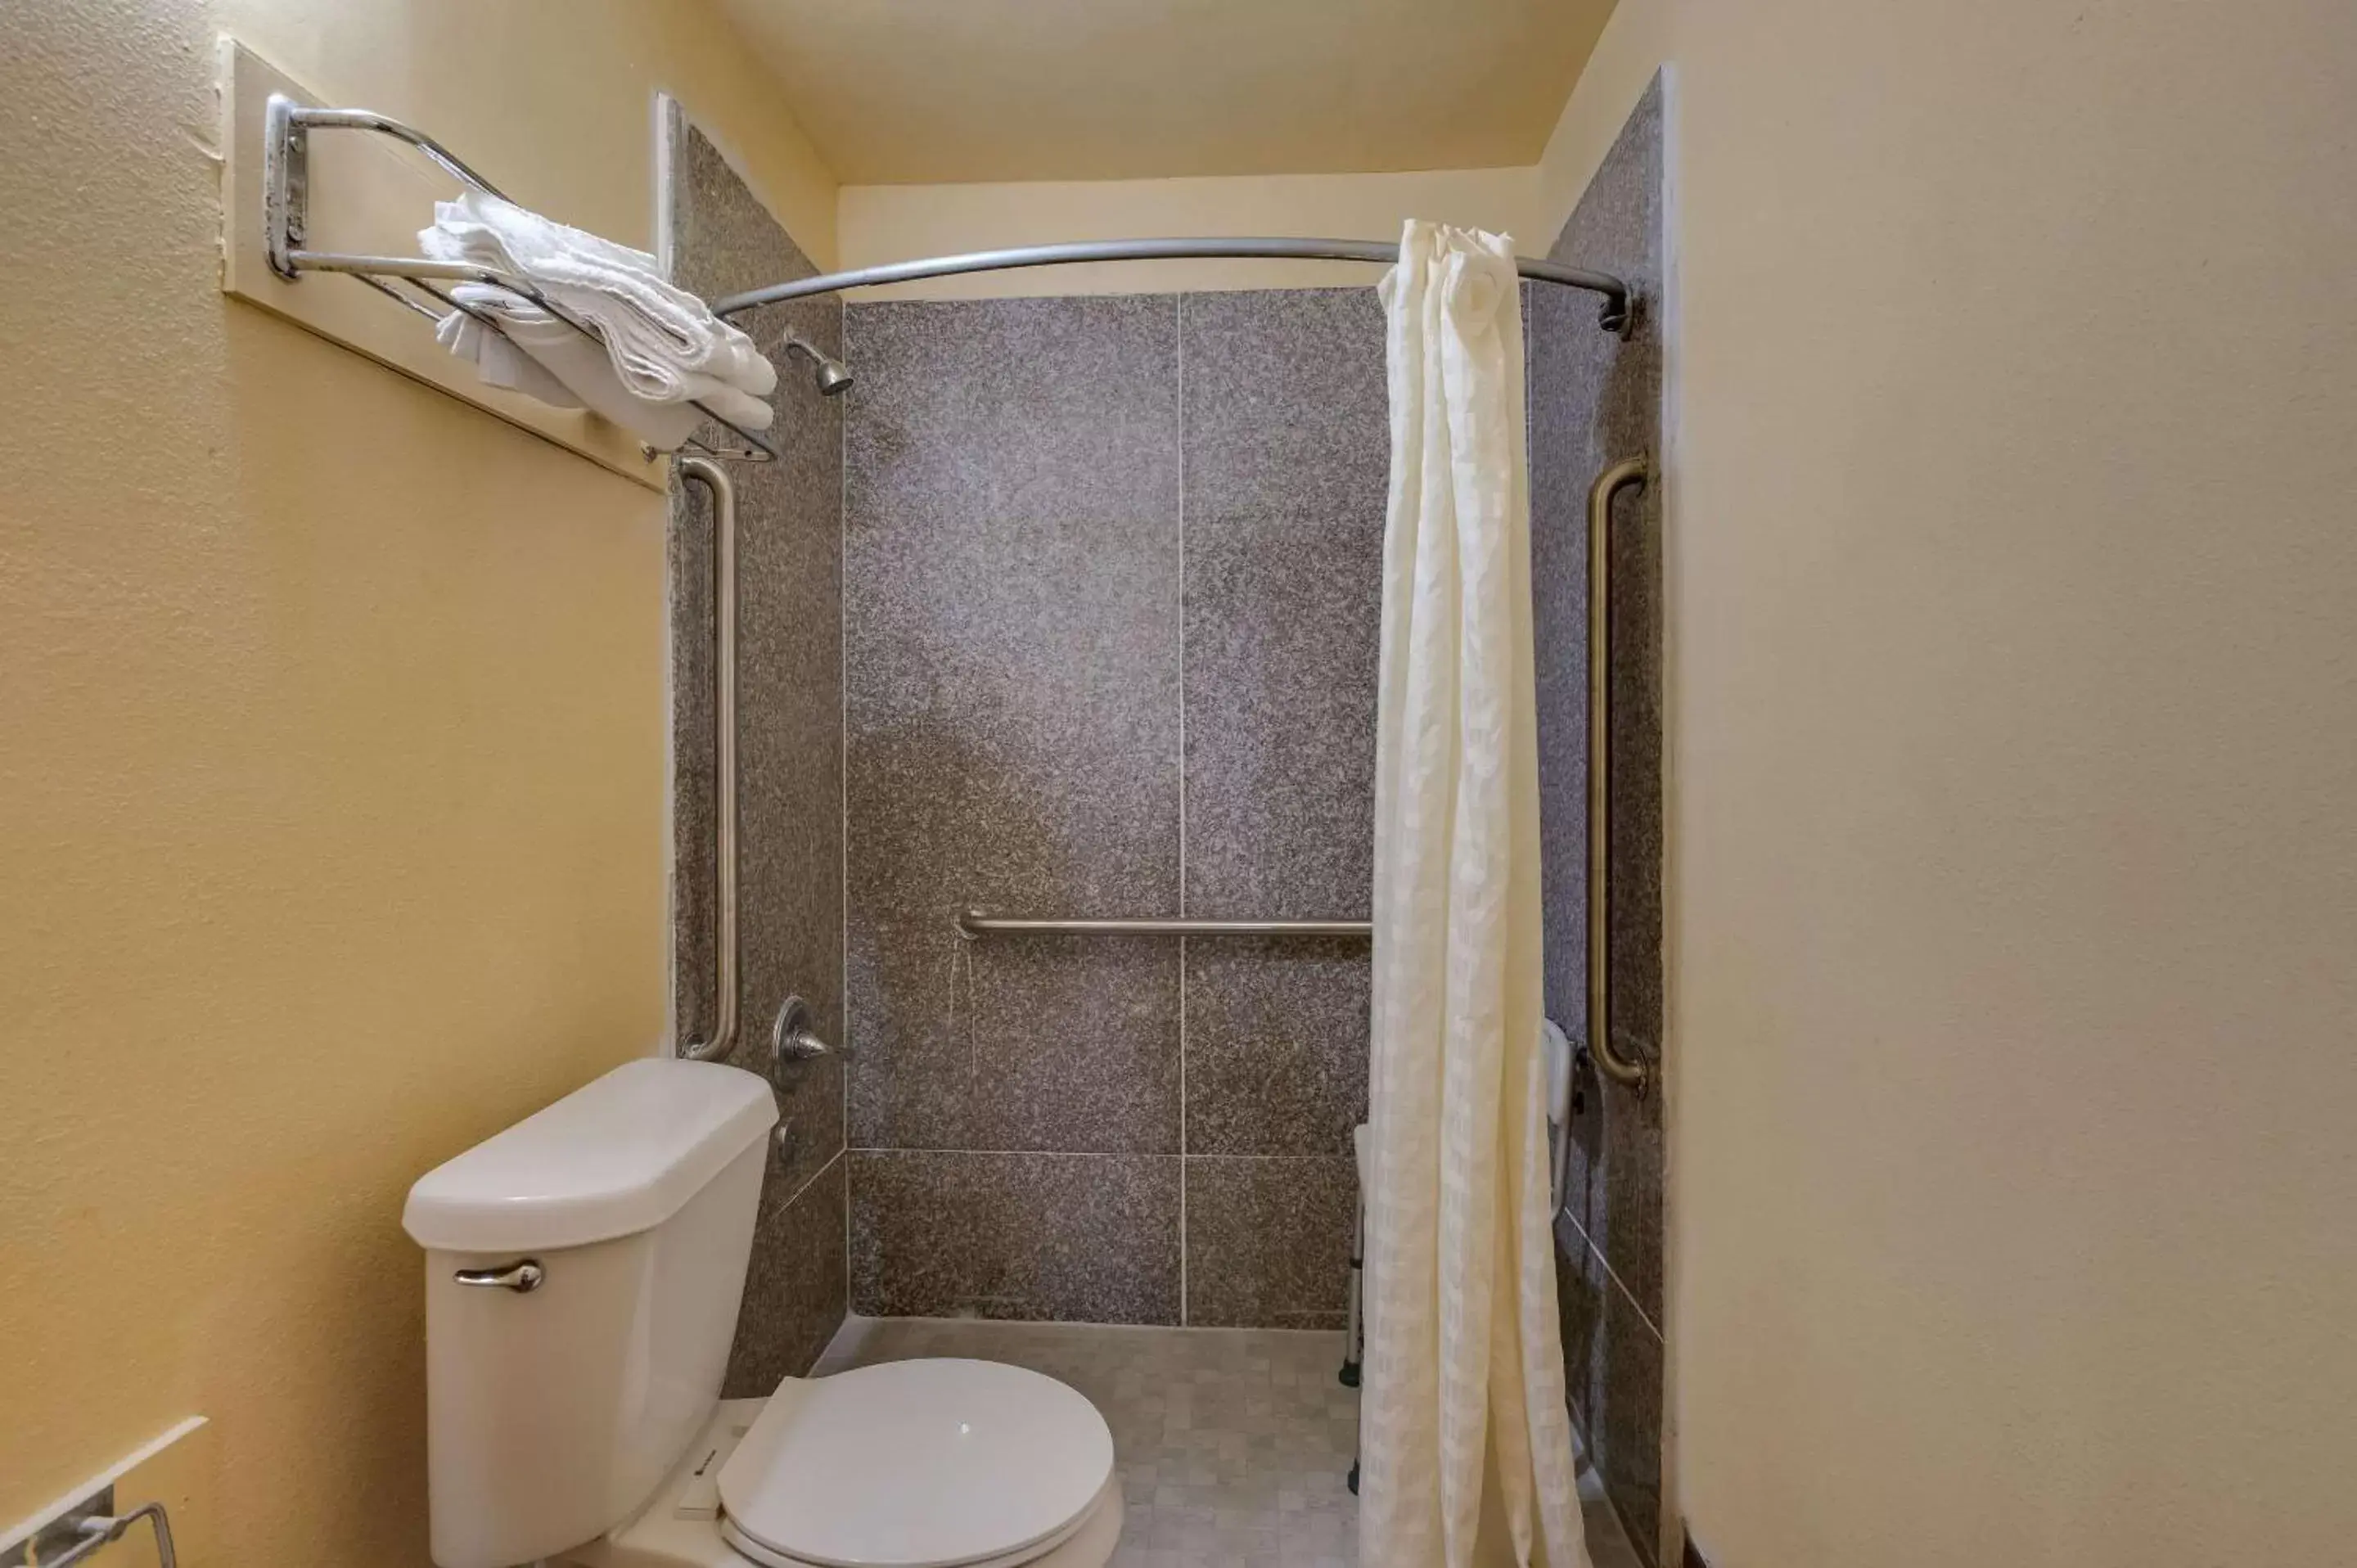 Bedroom, Bathroom in Rodeway Inn & Suites East